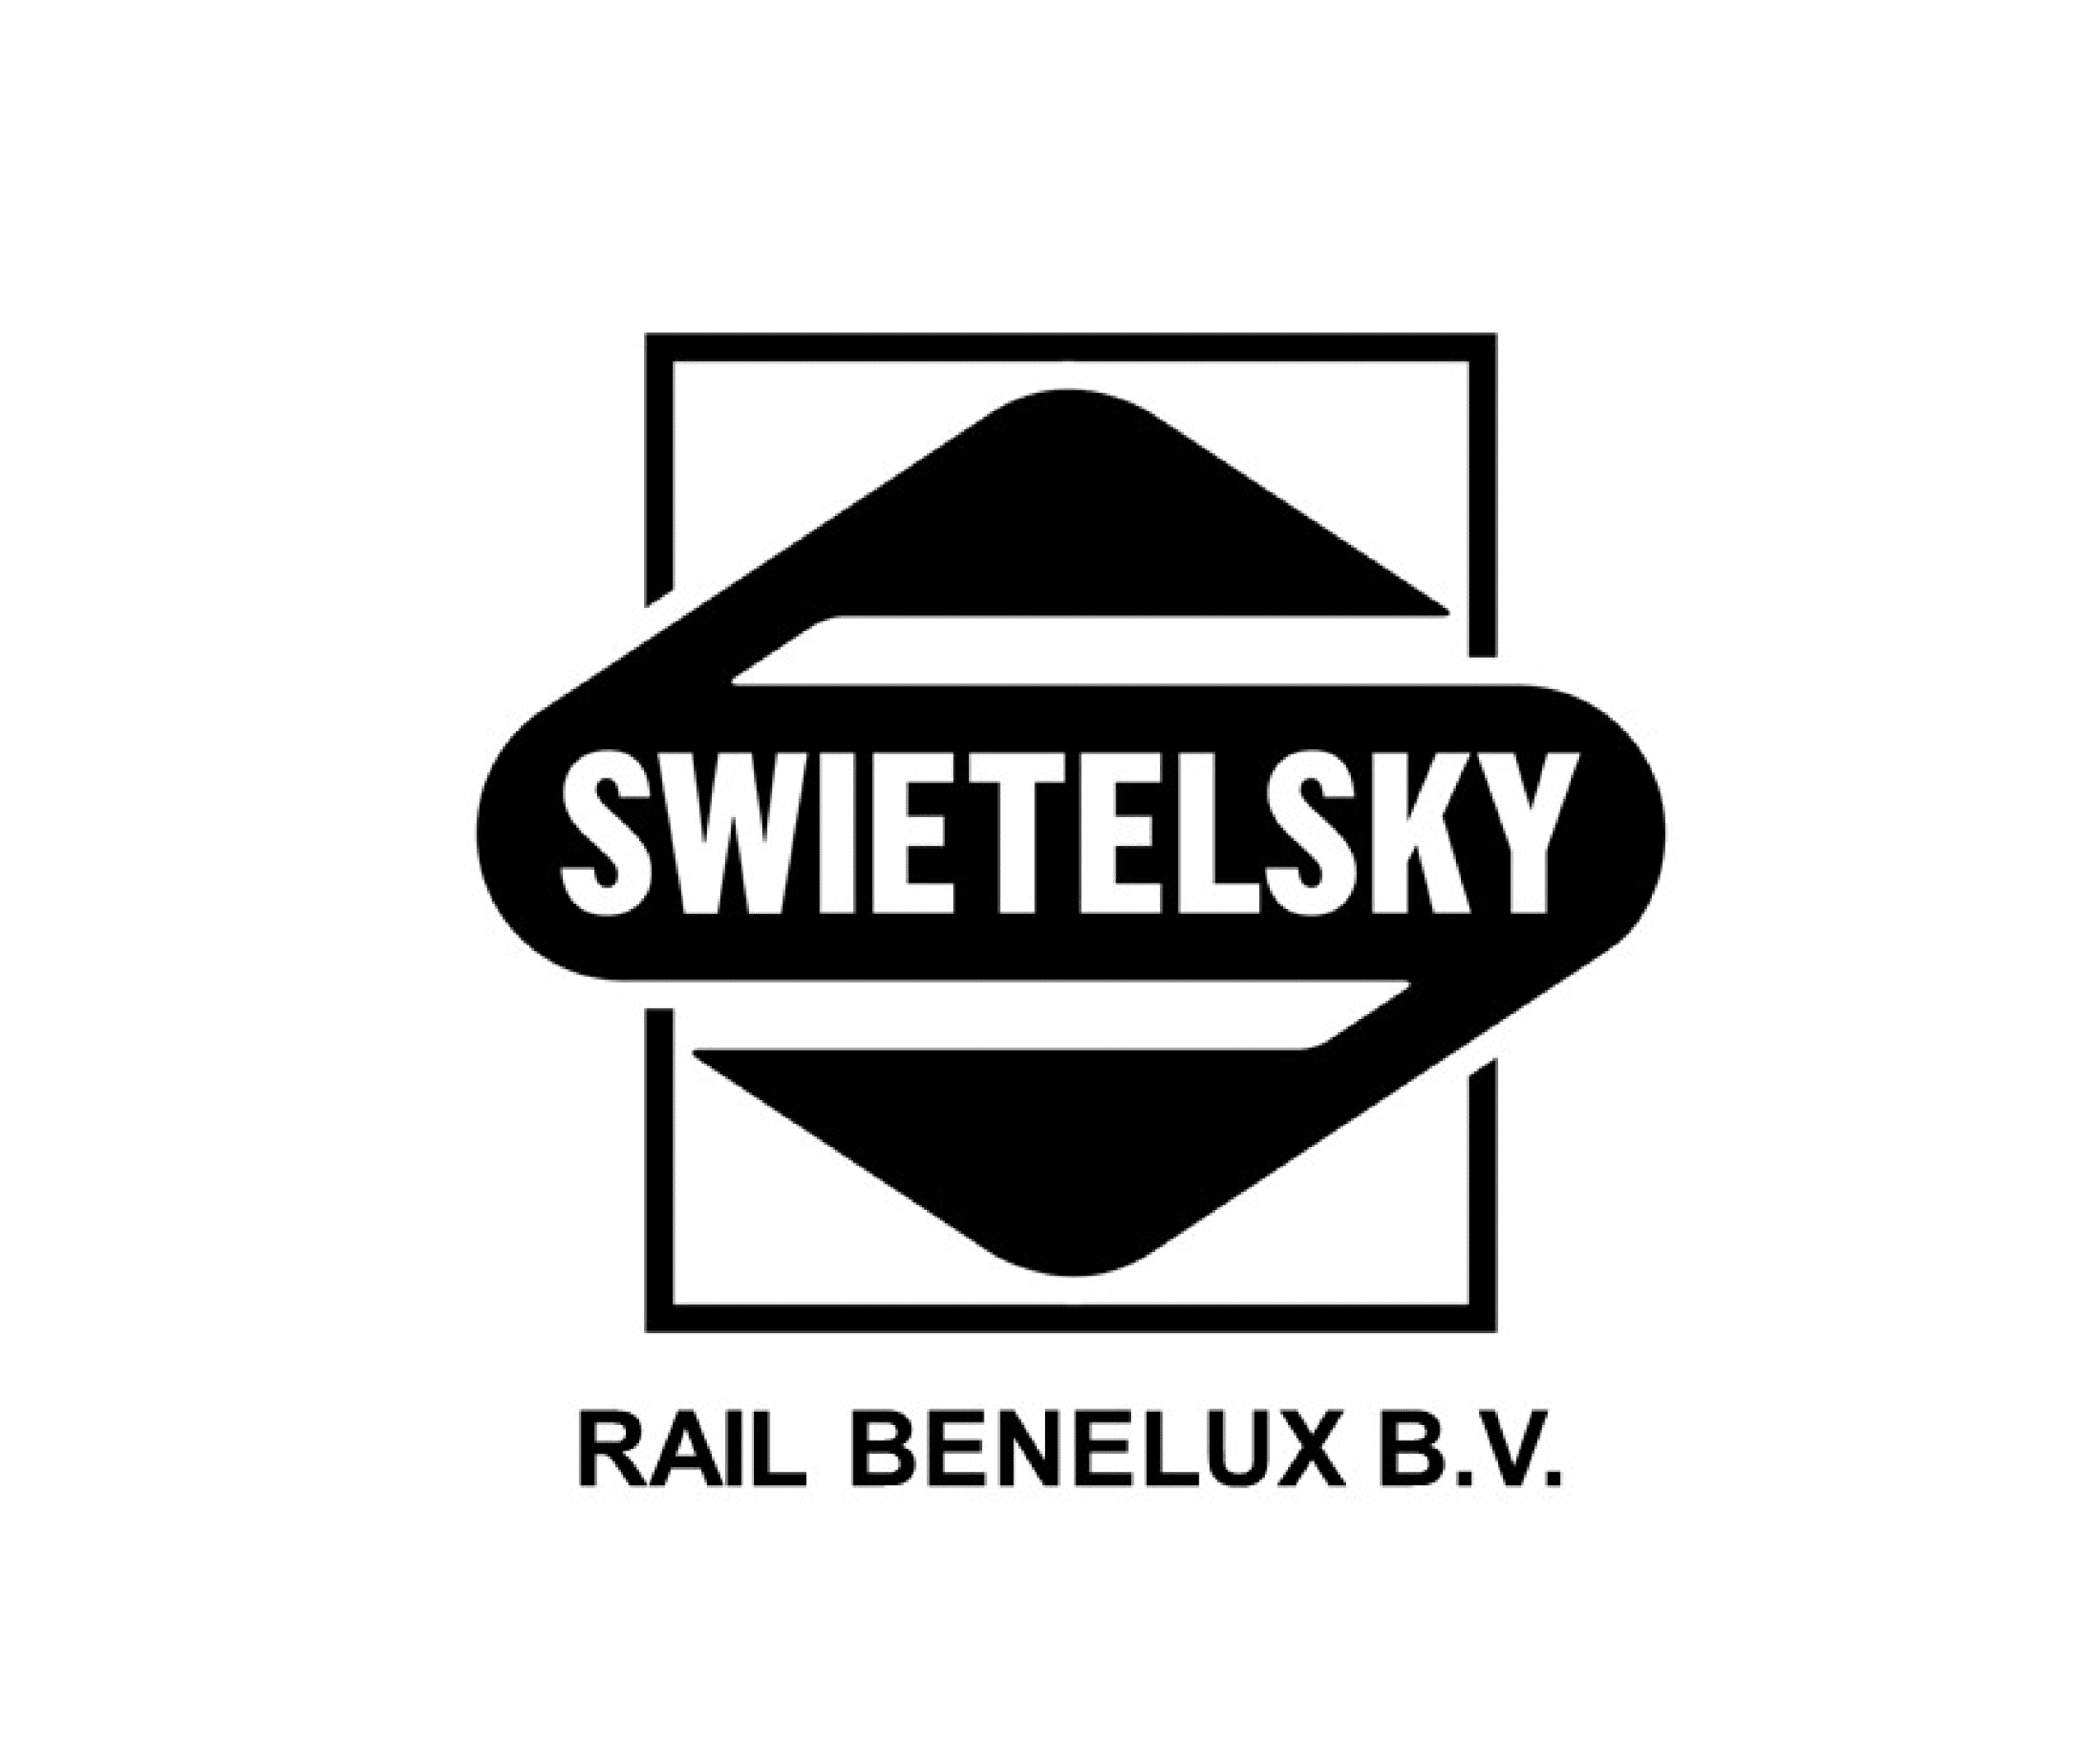 Swietelsky logo